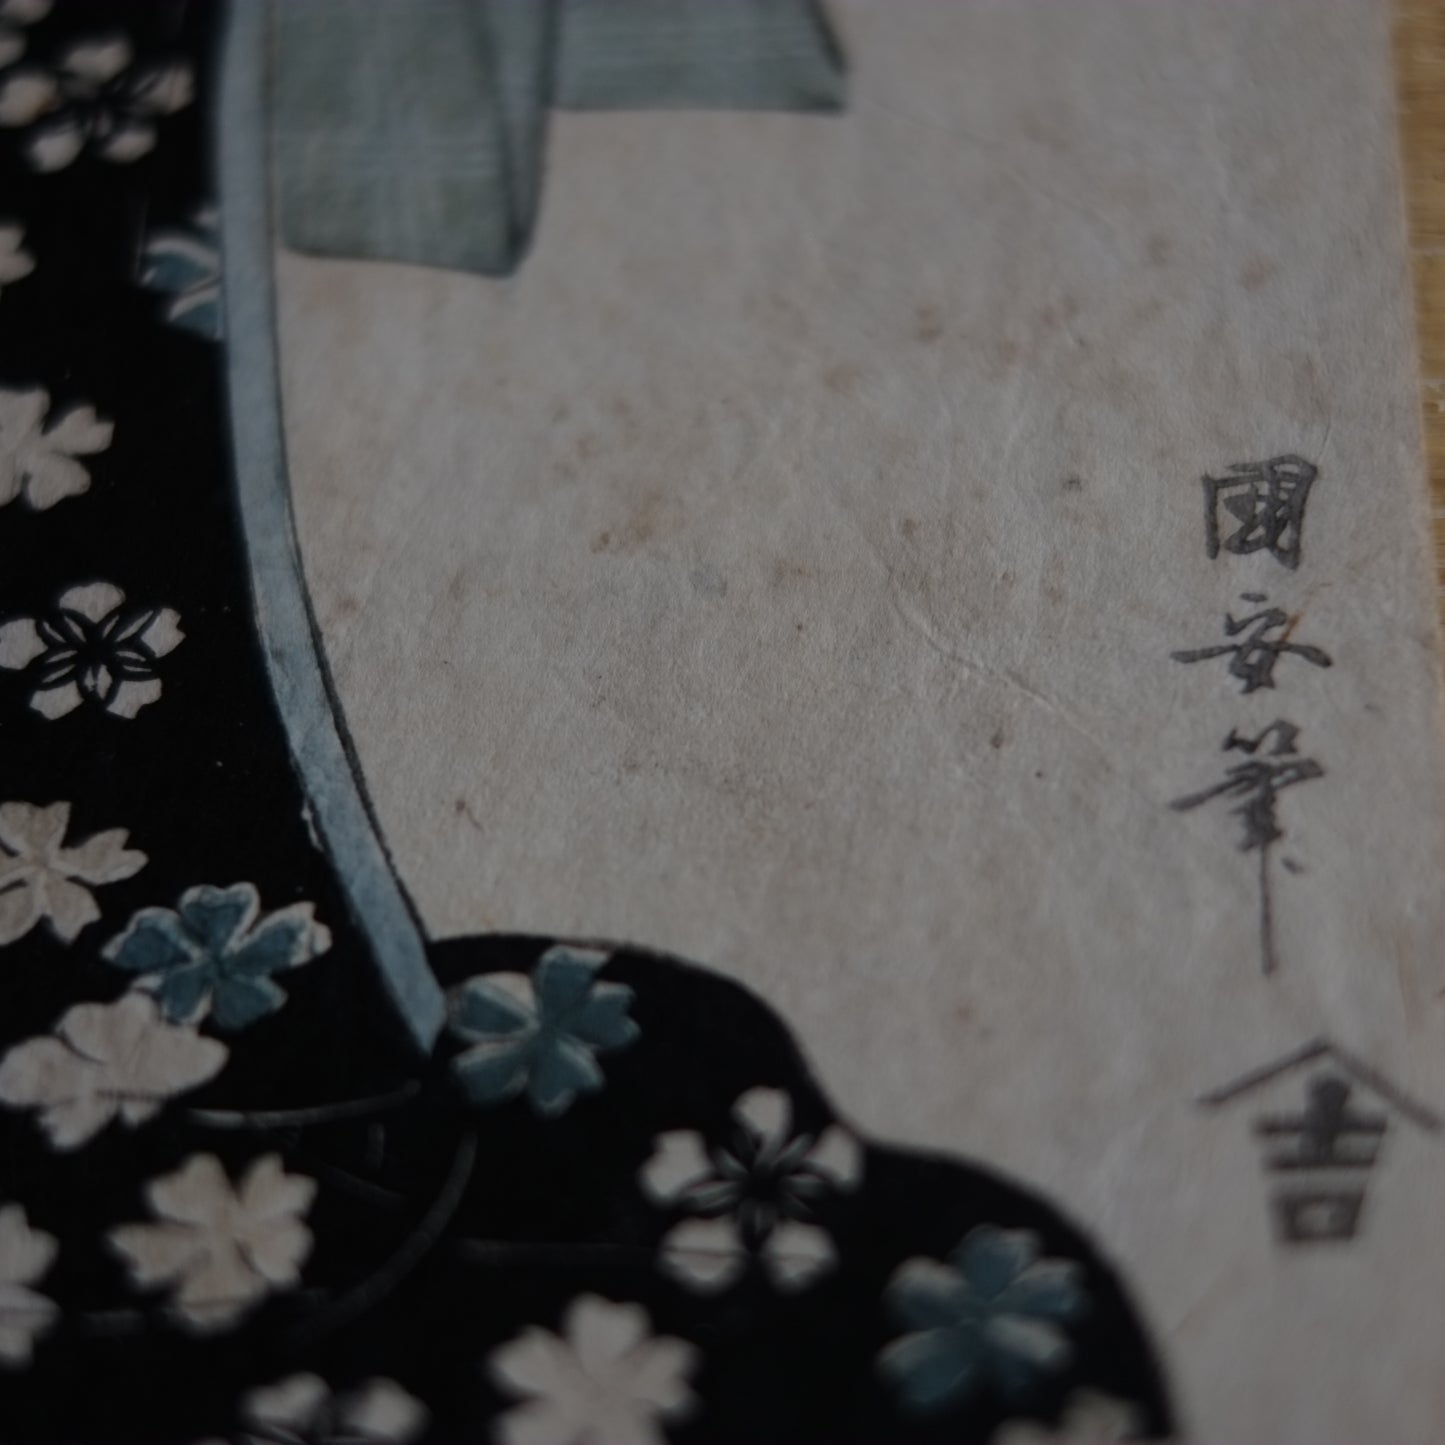 歌川国安　浮世絵　手刷木版画　額装　(江戸時代)